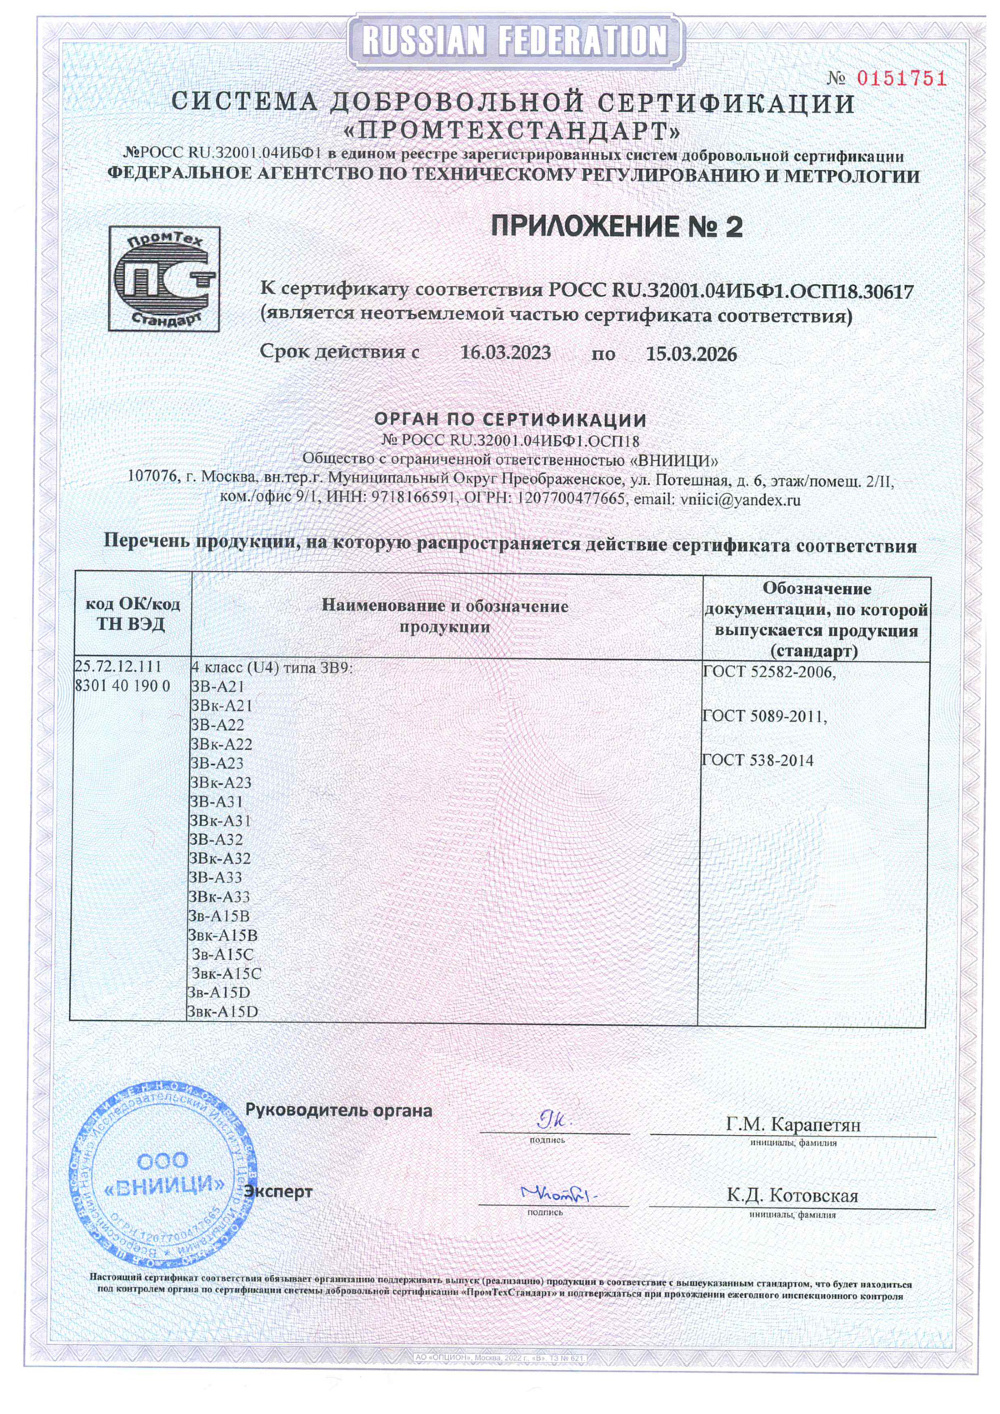 сертификат соответствия для замка А15 стр3